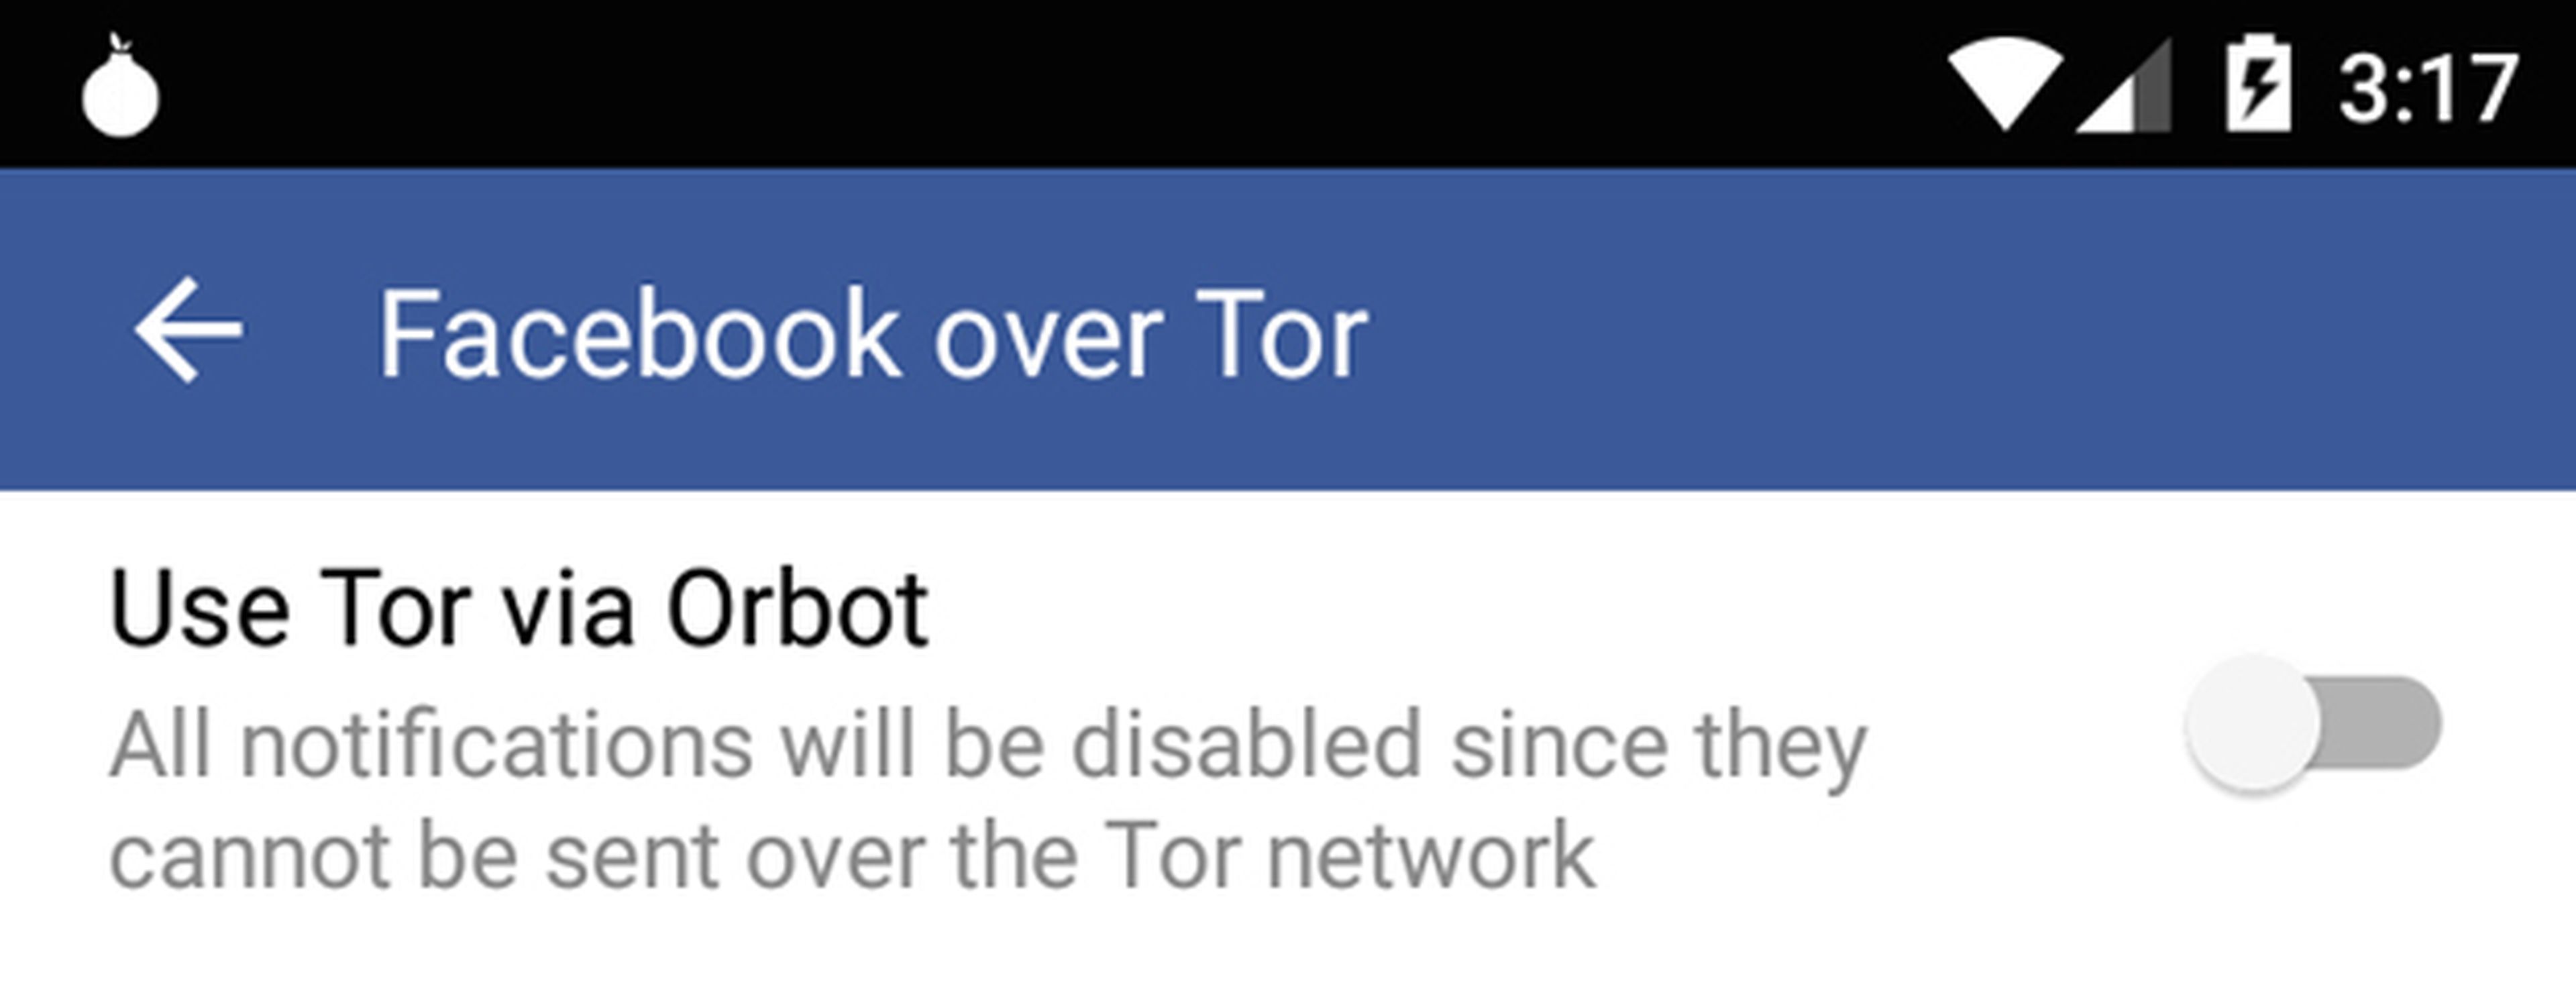 Navegación anónima en Facebook a través de Tor